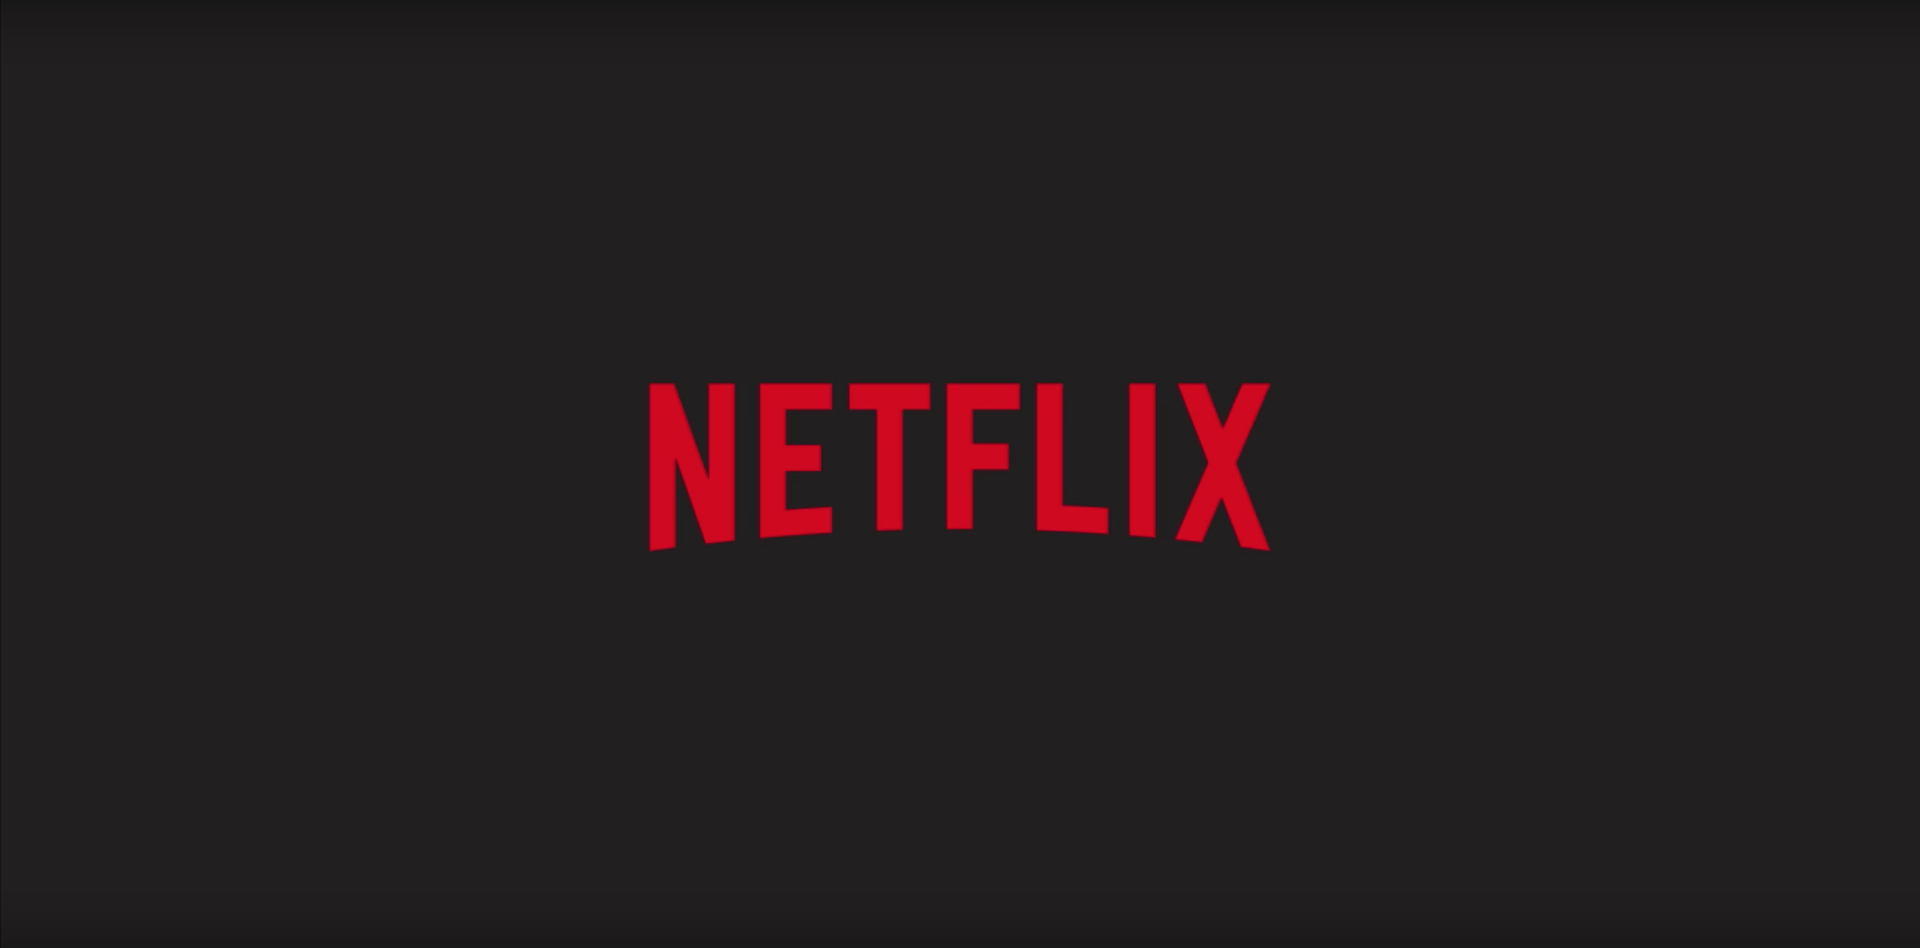 Netflix perderia mais da metade dos assinantes se começasse a exibir comerciais, diz estudo